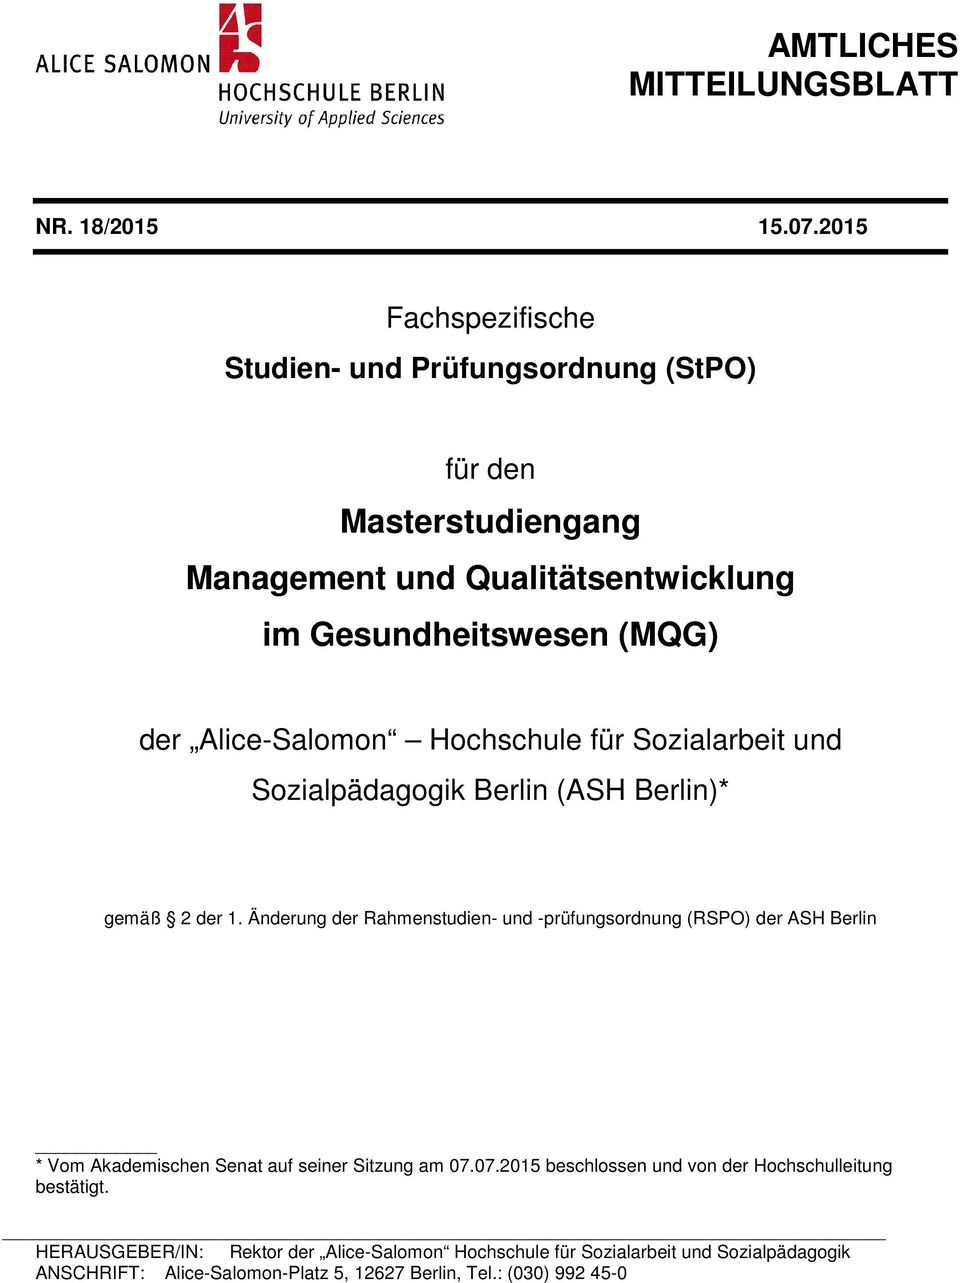 Alice-Salomon Hochschule für Sozialarbeit und Sozialpädagogik Berlin (ASH Berlin)* gemäß 2 der 1.